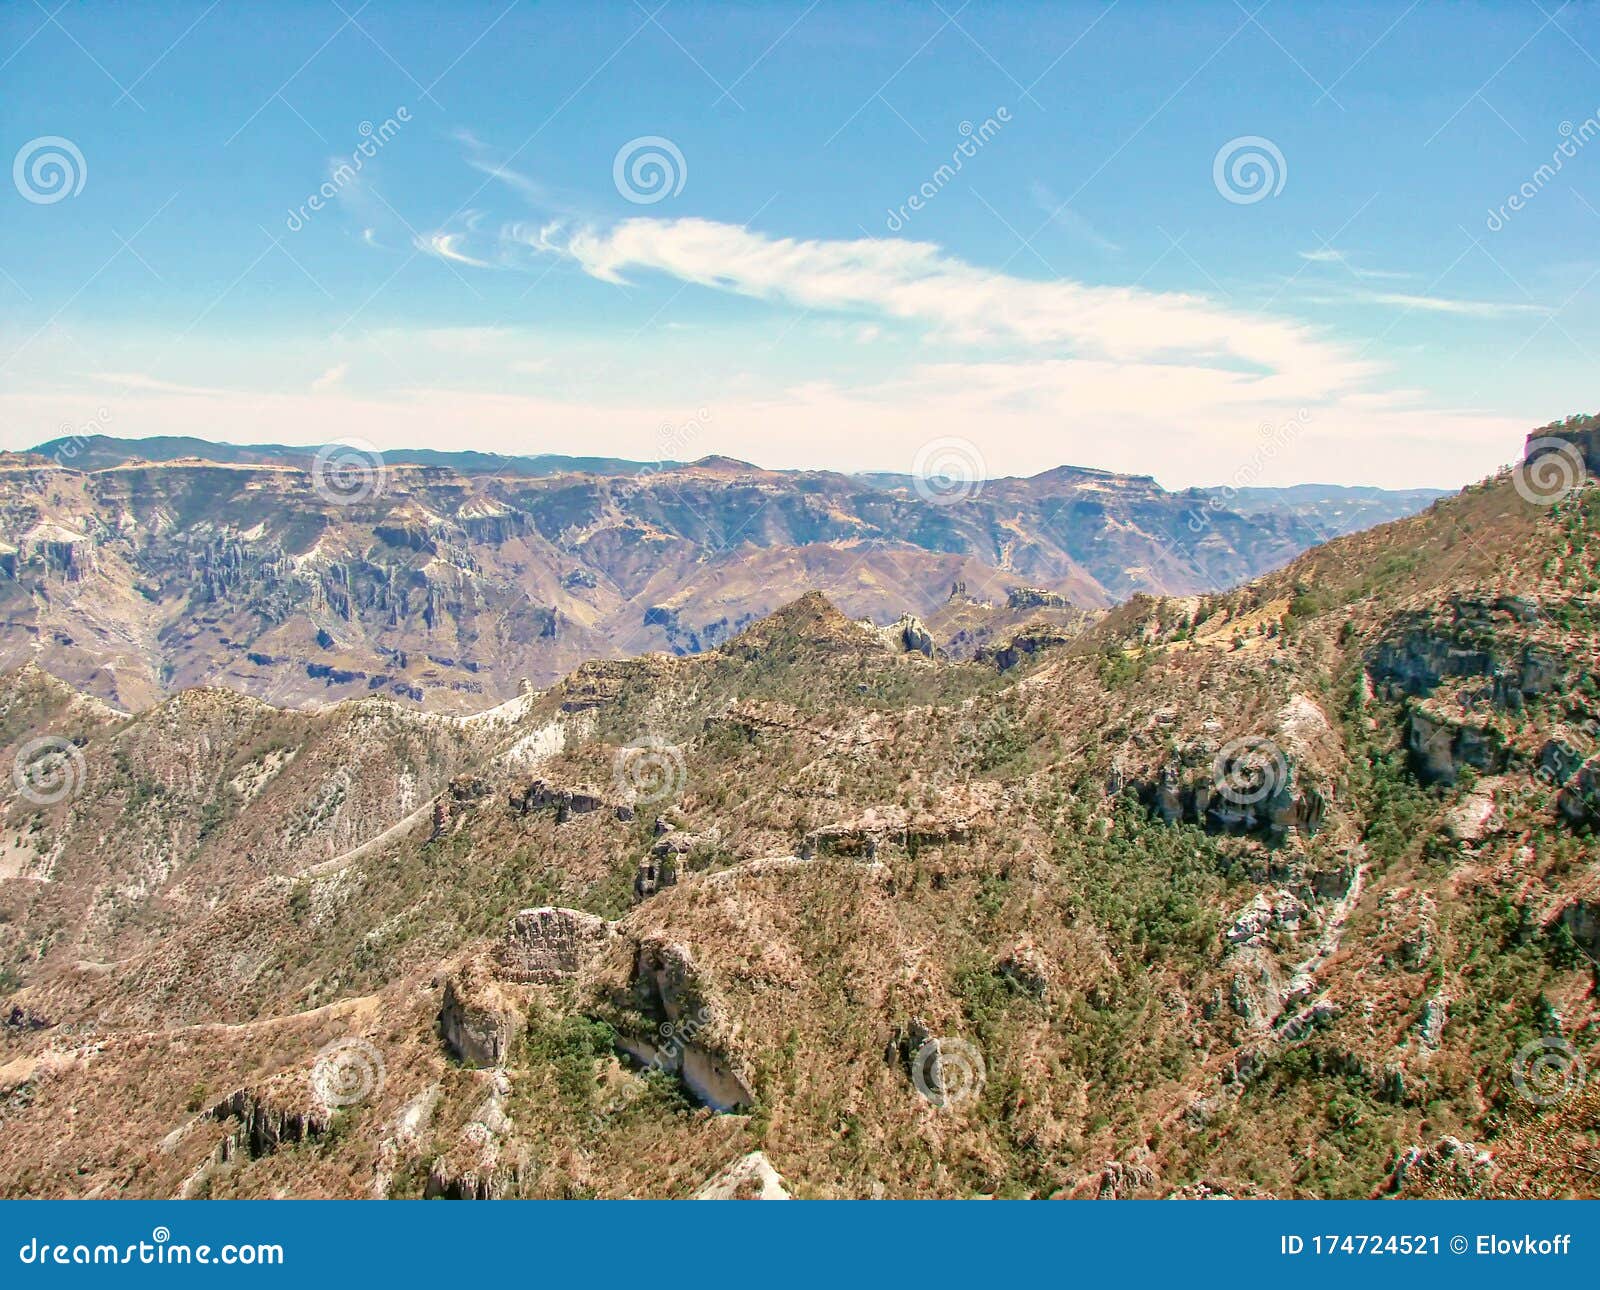 mexico, scenic landscapes of the famous copper canton barranca del cobre